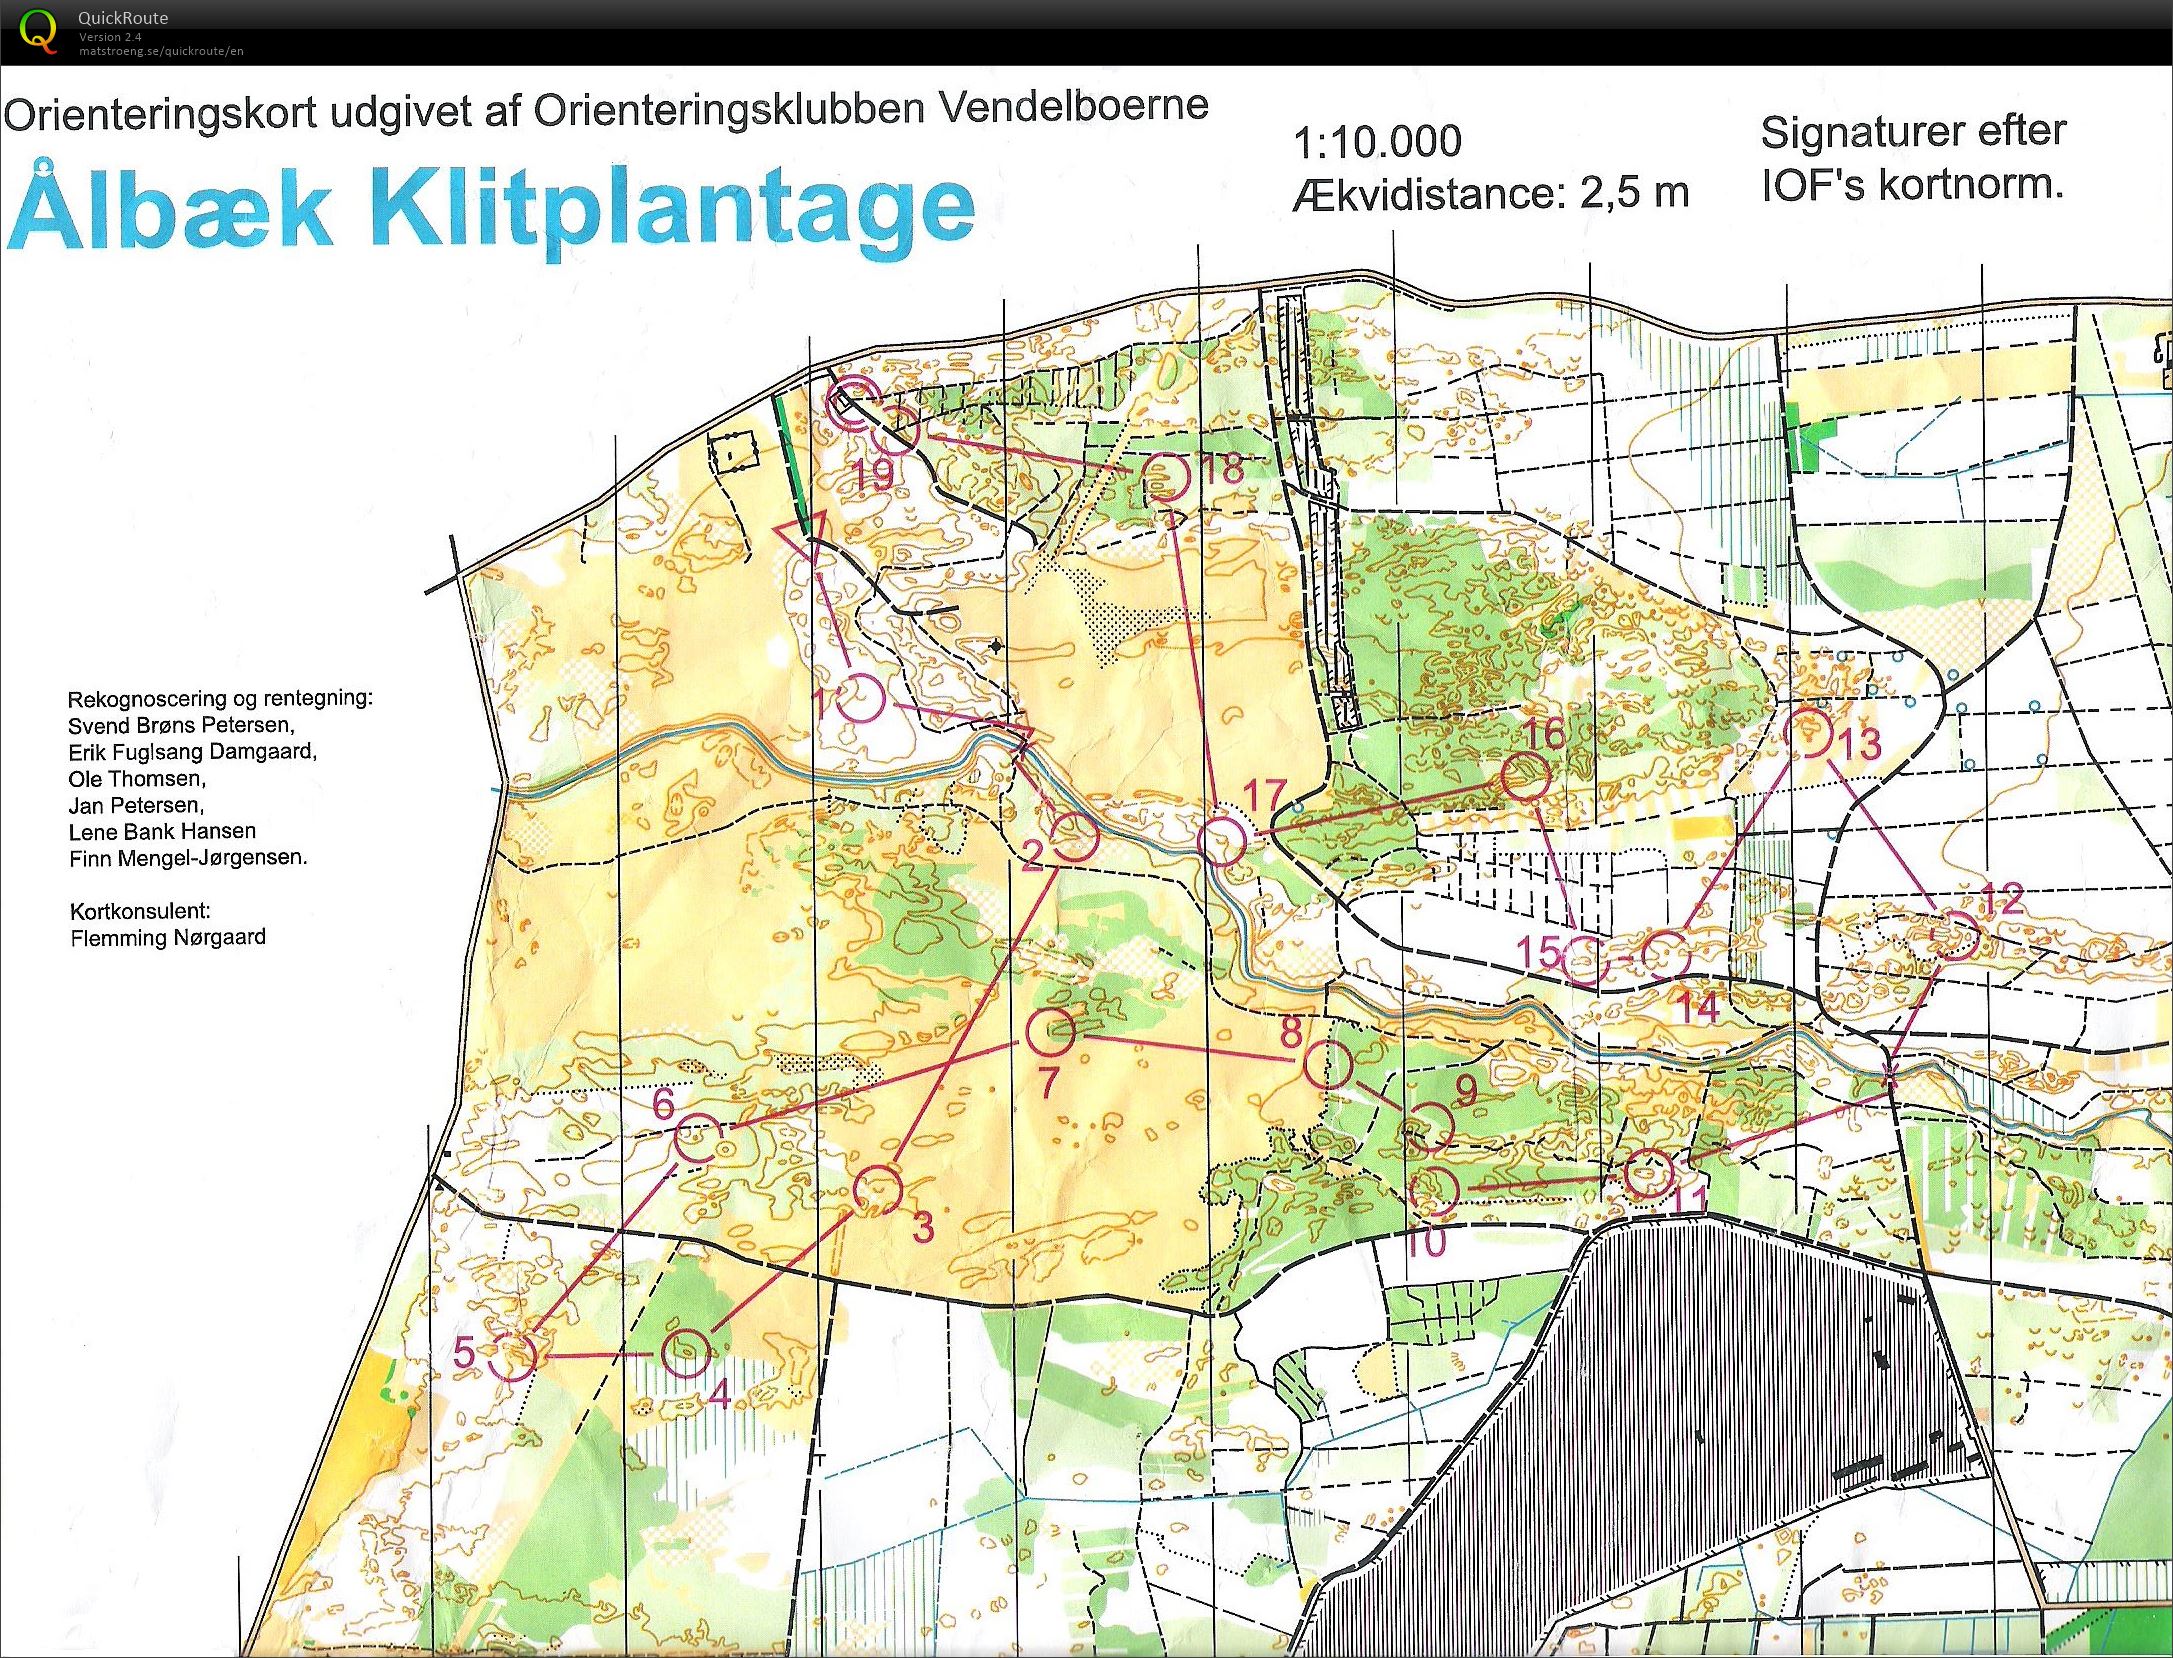 NJM Natløb Ålbæk Klitplantage - H45 - 6.2 km. (24-09-2014)